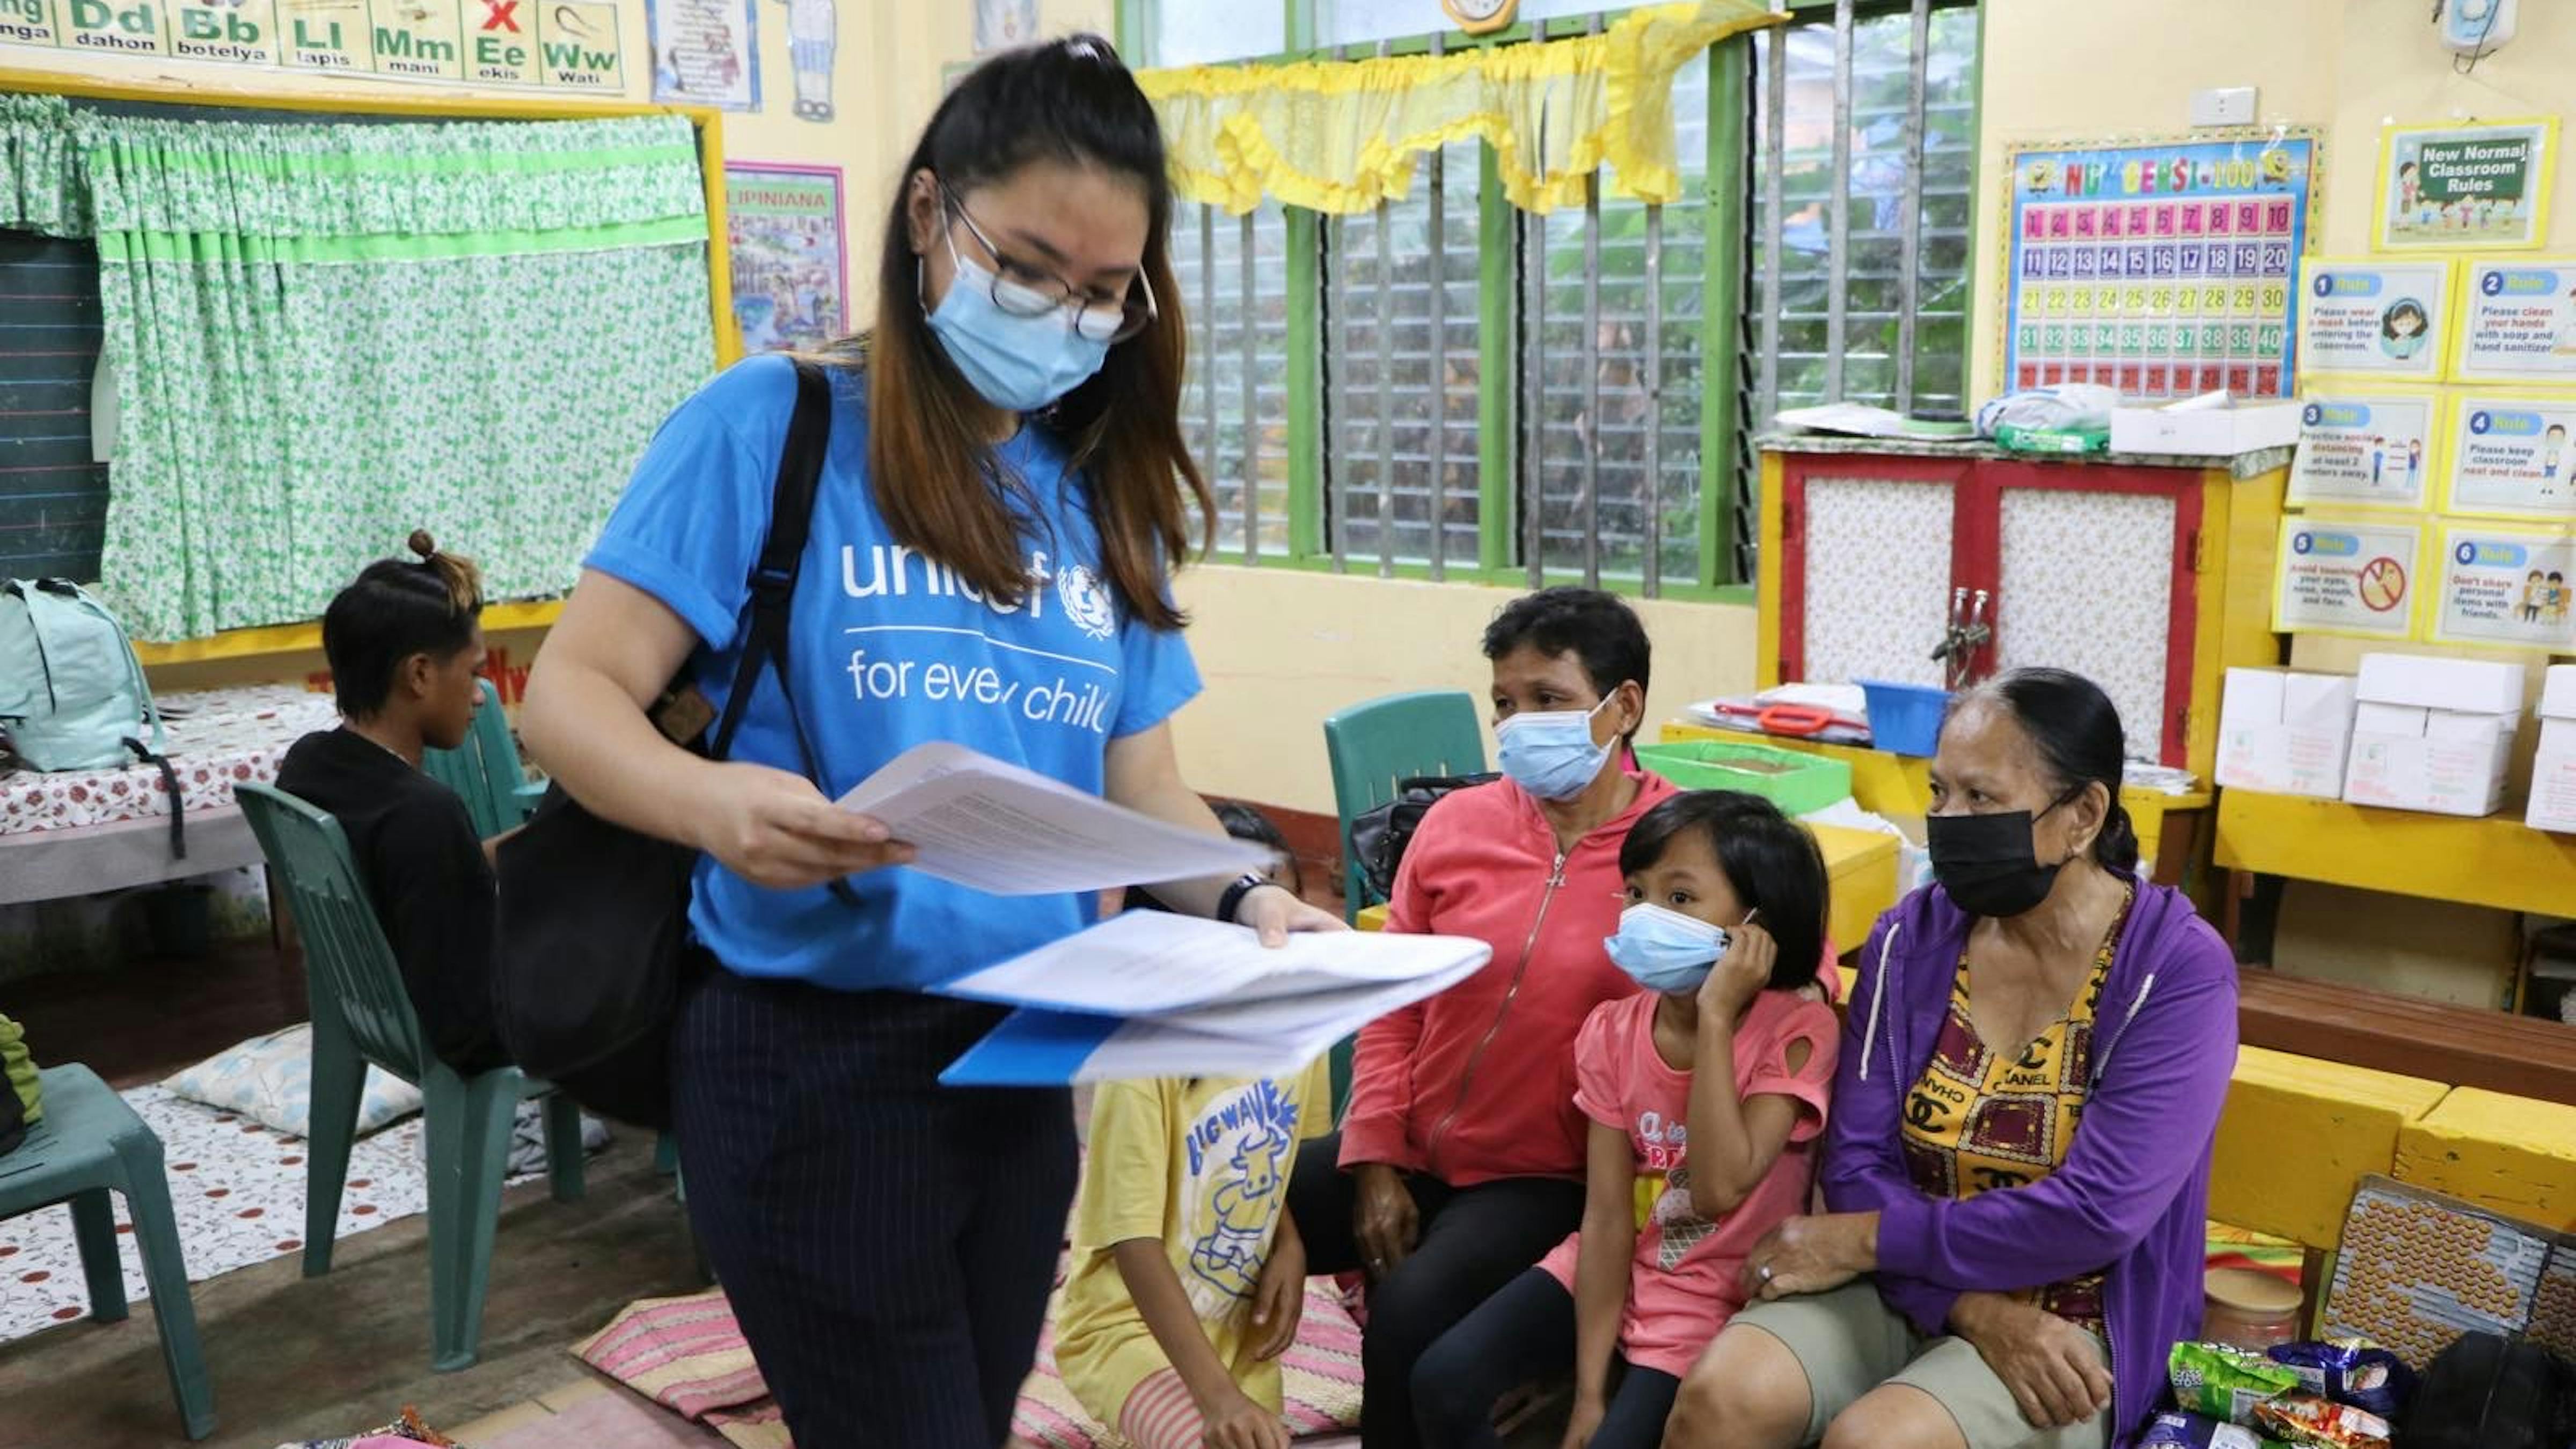 Filippine, una famiglia evacuata da una zona a rischio è assistita dallo staff UNICEF